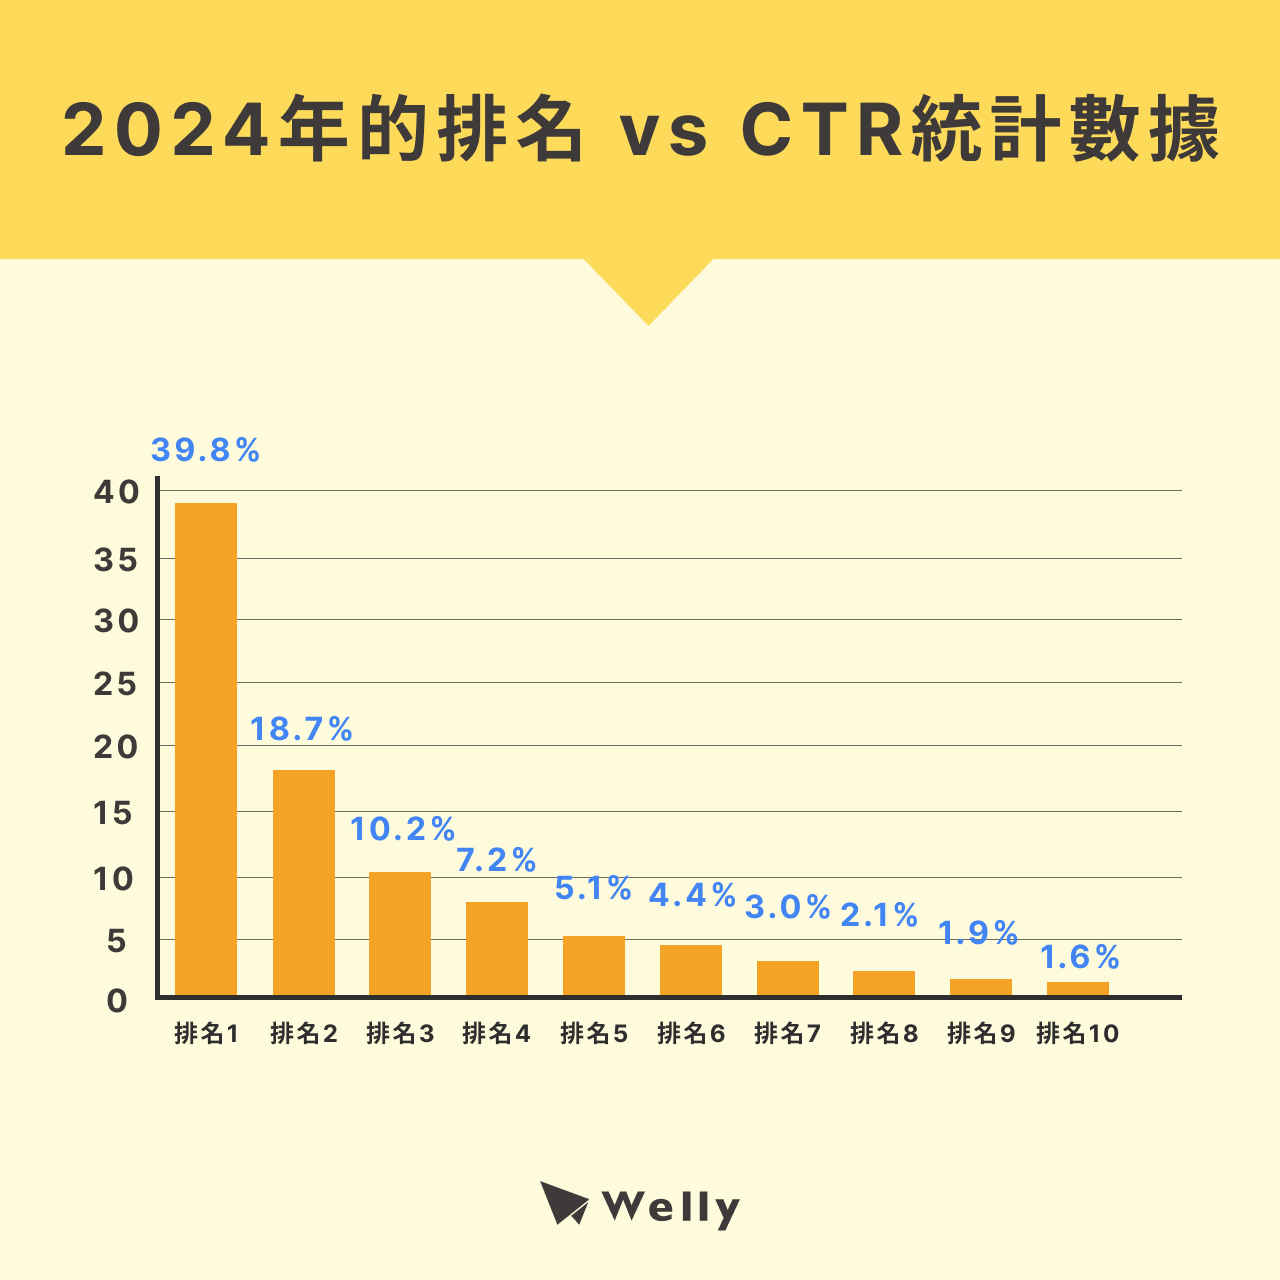 2024年的排名 vs CTR統計數據